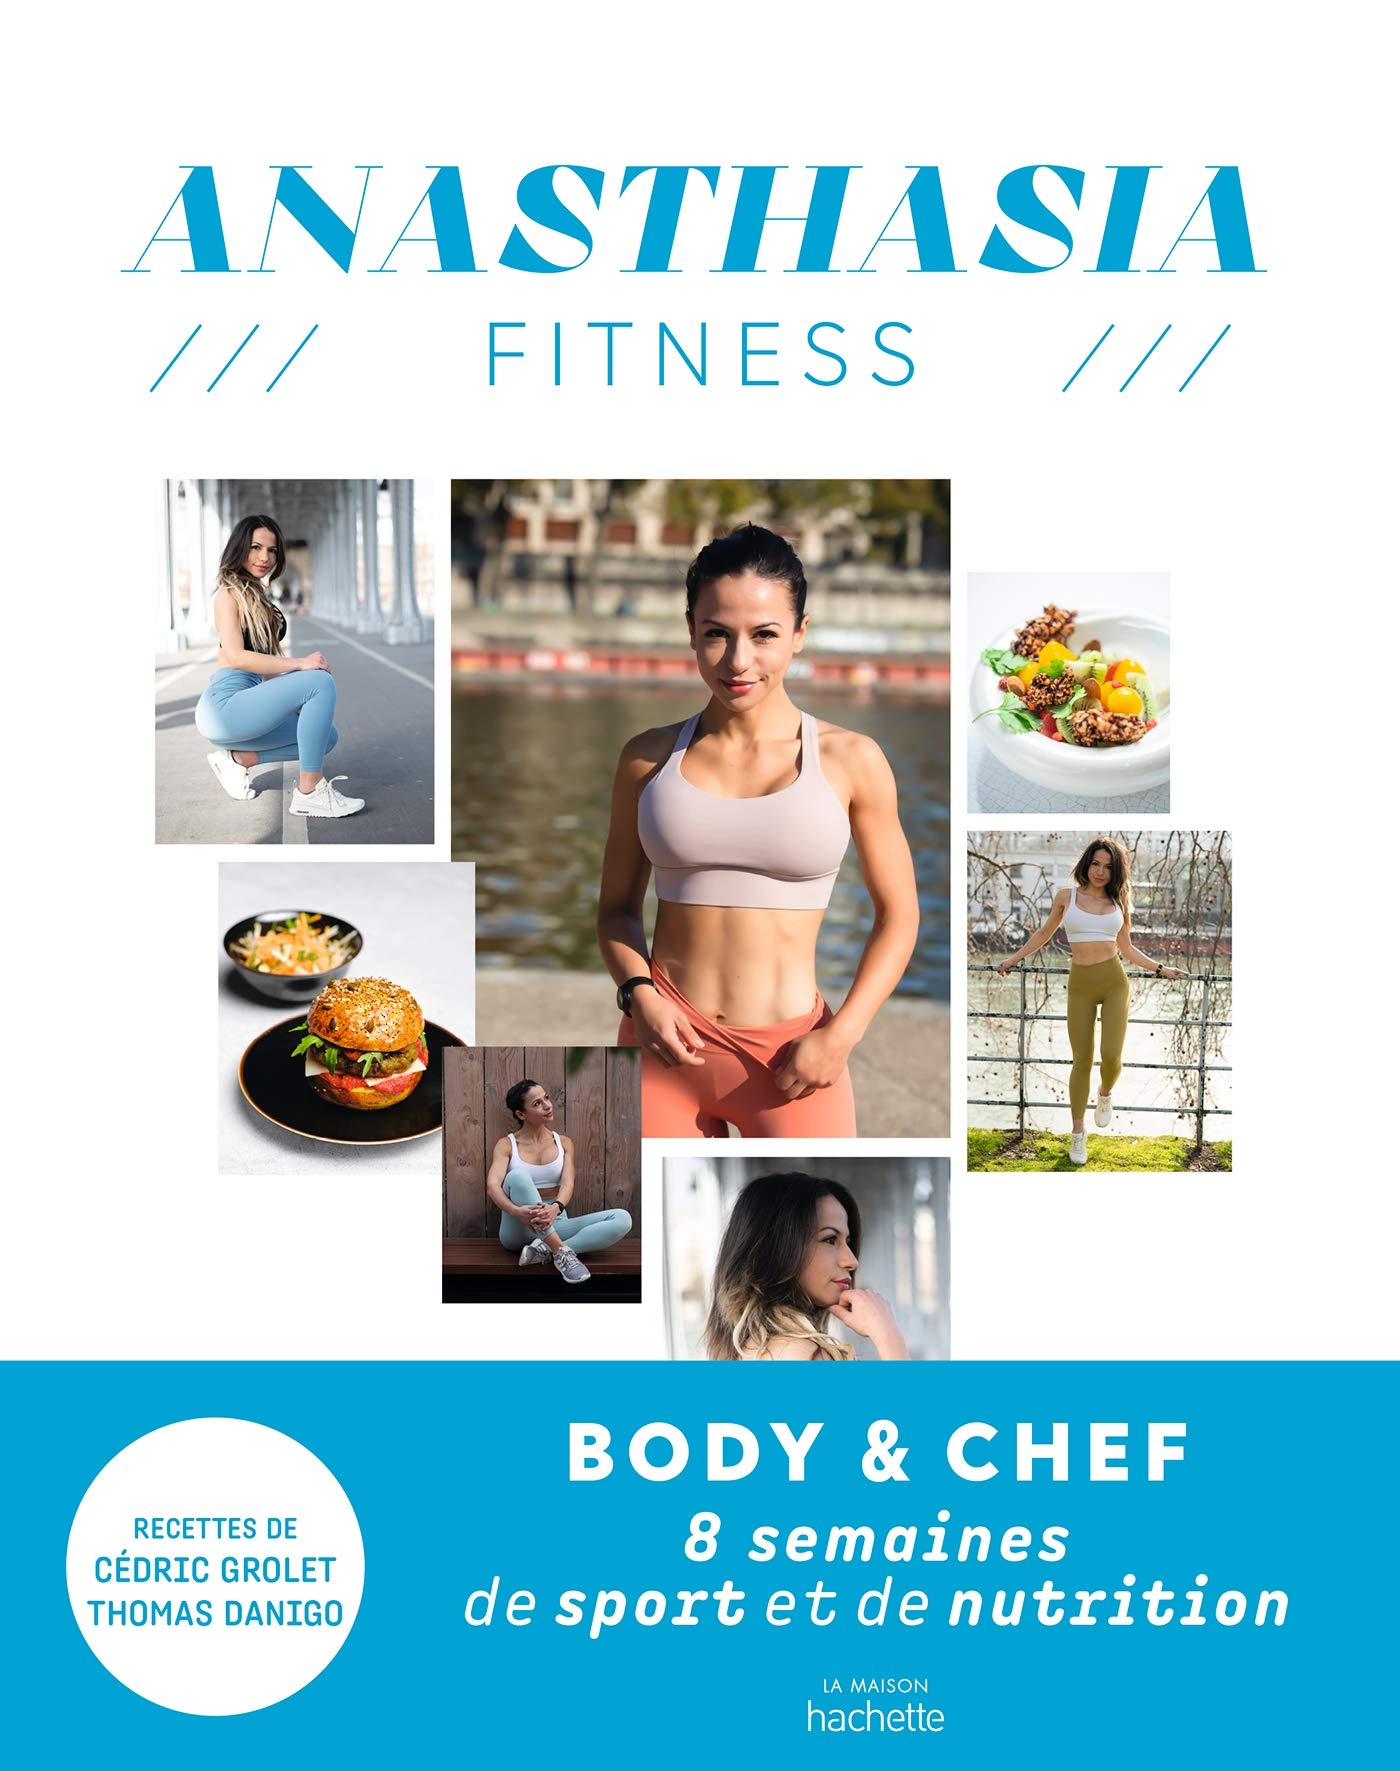 Anasthasia Fitness: 8 semaines de sport et de nutrition